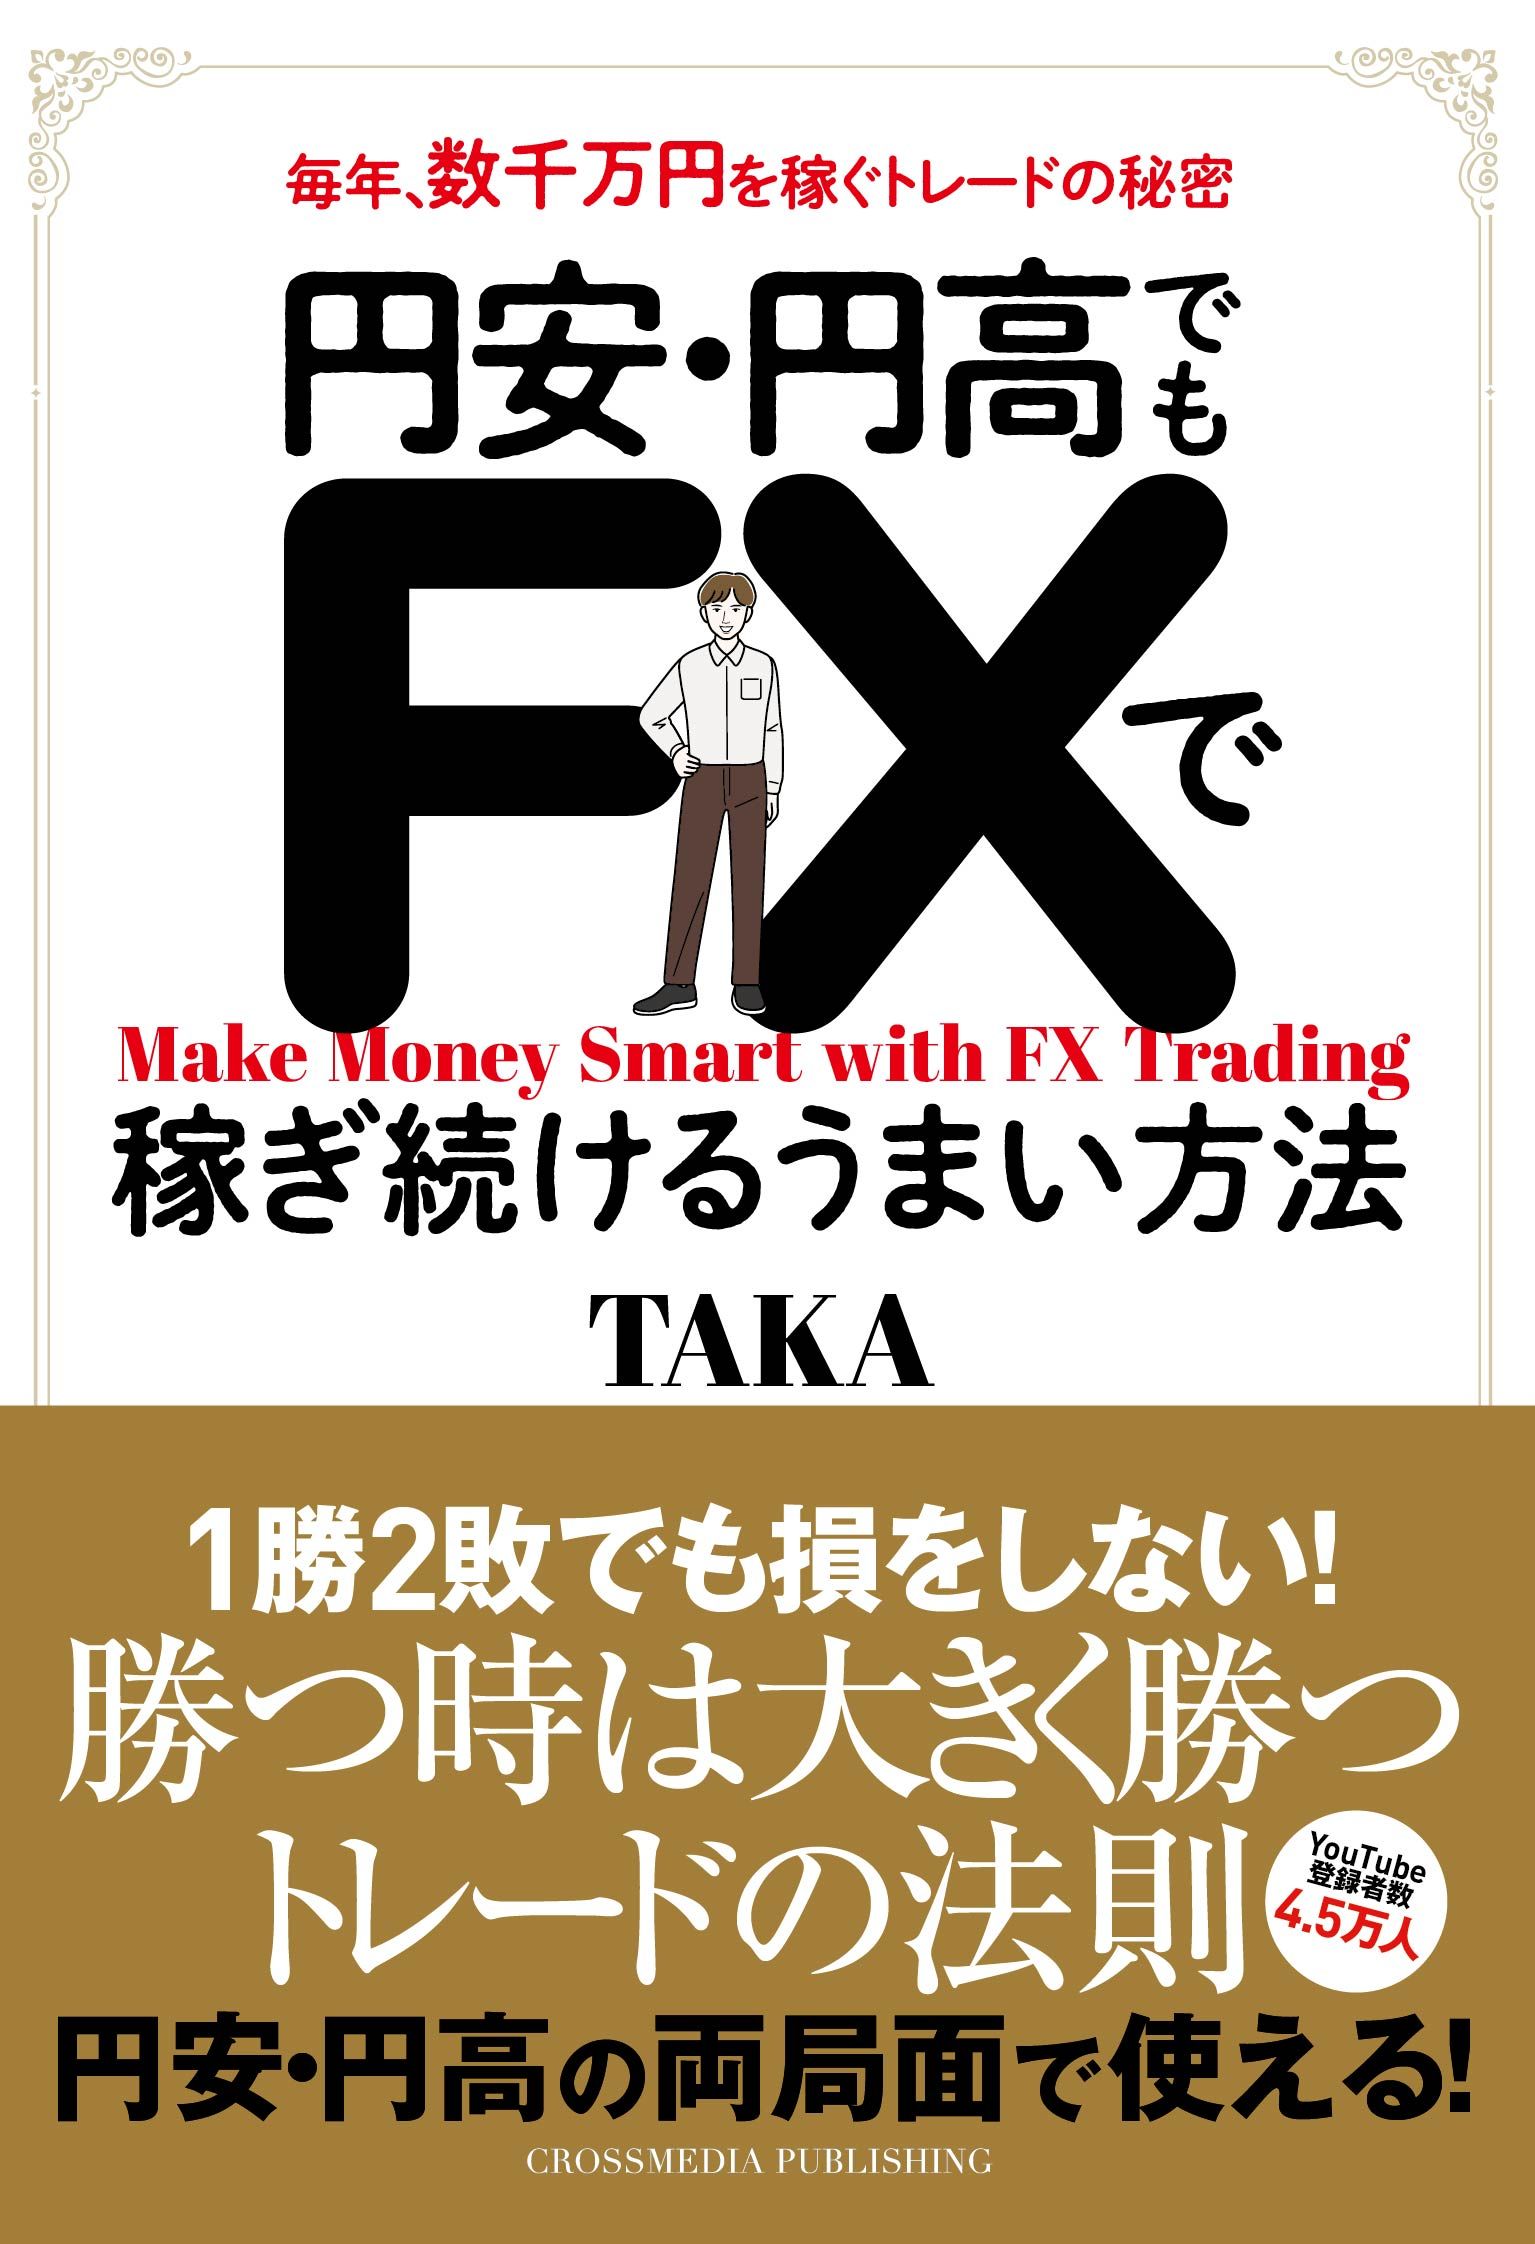 円安・円高でもＦＸで稼ぎ続けるうまい方法 - TAKA - ビジネス・実用書 